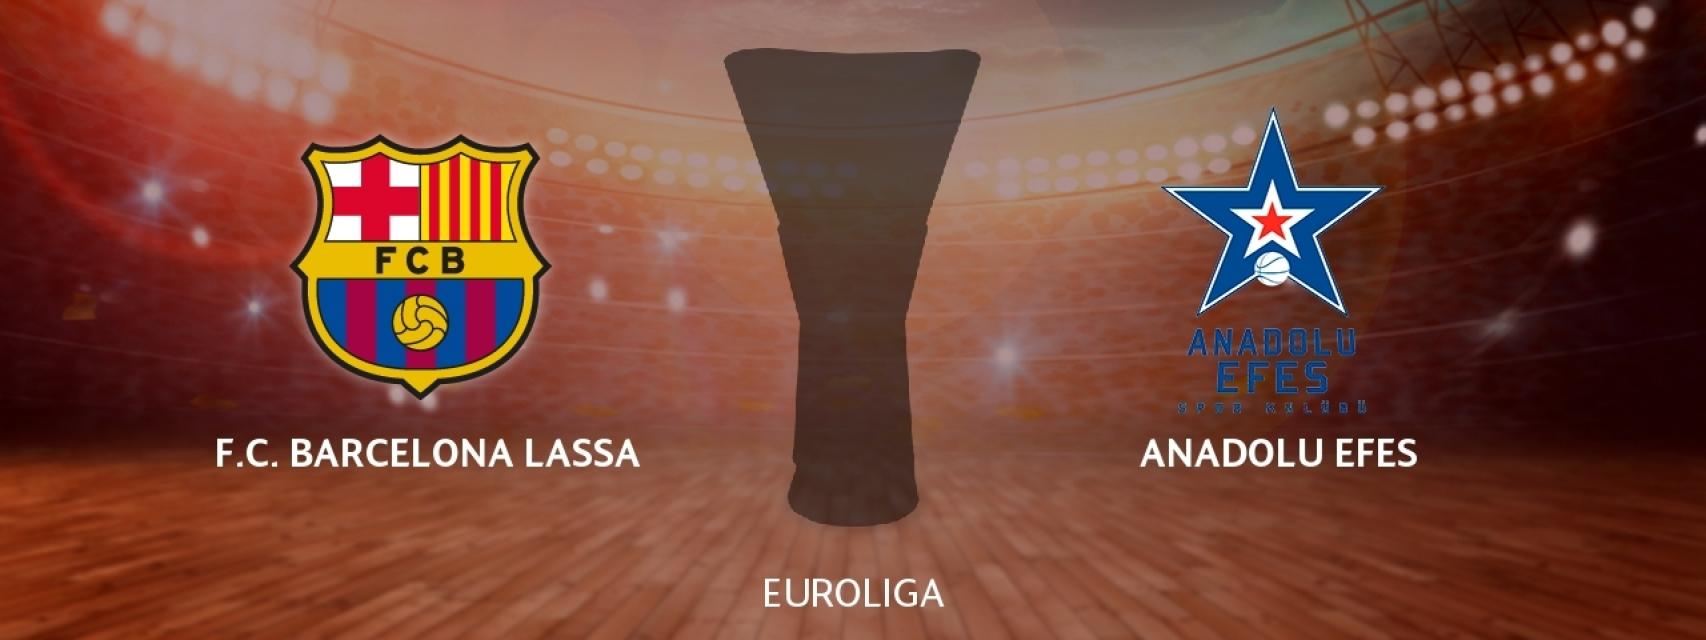 Barcelona Lassa - Anadolu Efes, siga en directo el partido de Euroliga